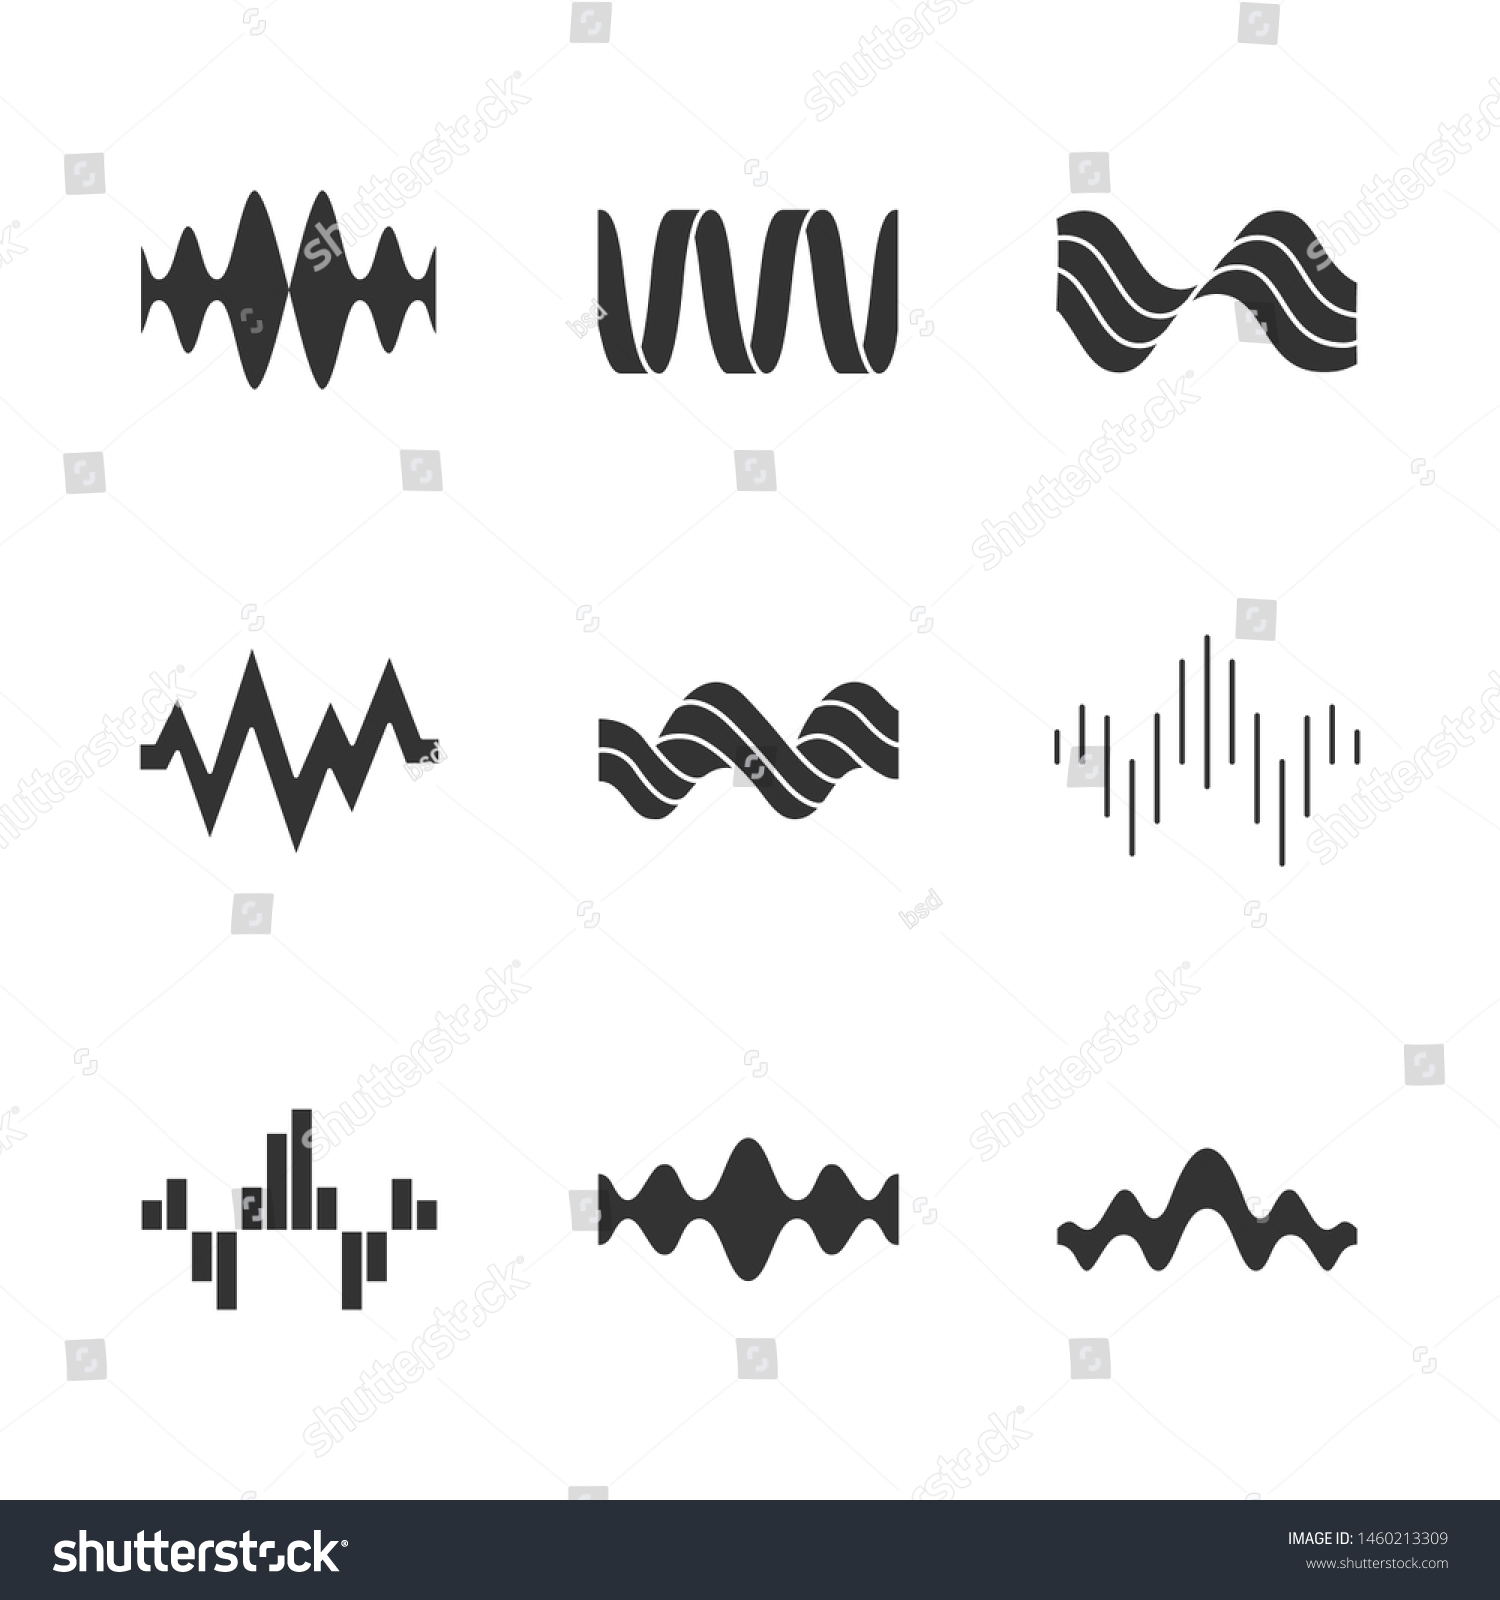 音波の記号アイコンセット シルエット記号 音楽のリズム 心臓の鼓動 オーディオ波 録音 ラジオ信号のロゴタイプ デジタル波形 抽象的なサウンドウェーブ ベクターイラスト のベクター画像素材 ロイヤリティフリー